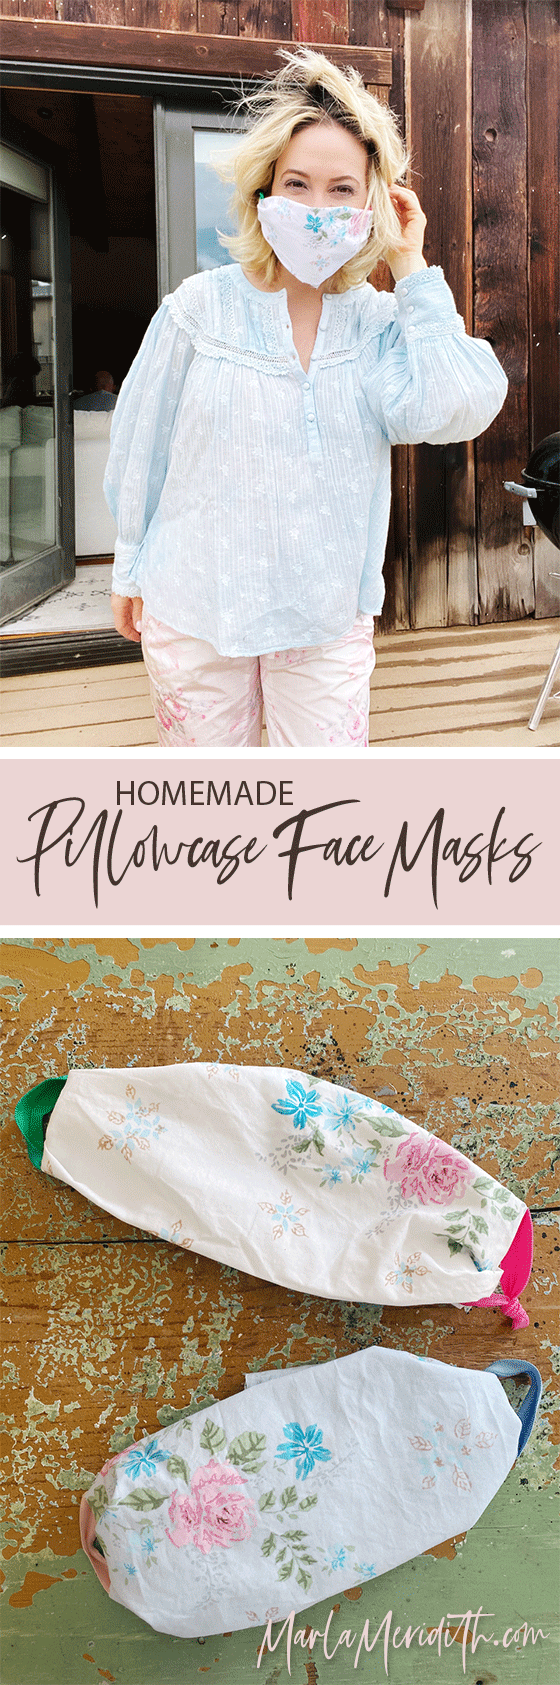 DIY Homemade Pillowcase Face Masks